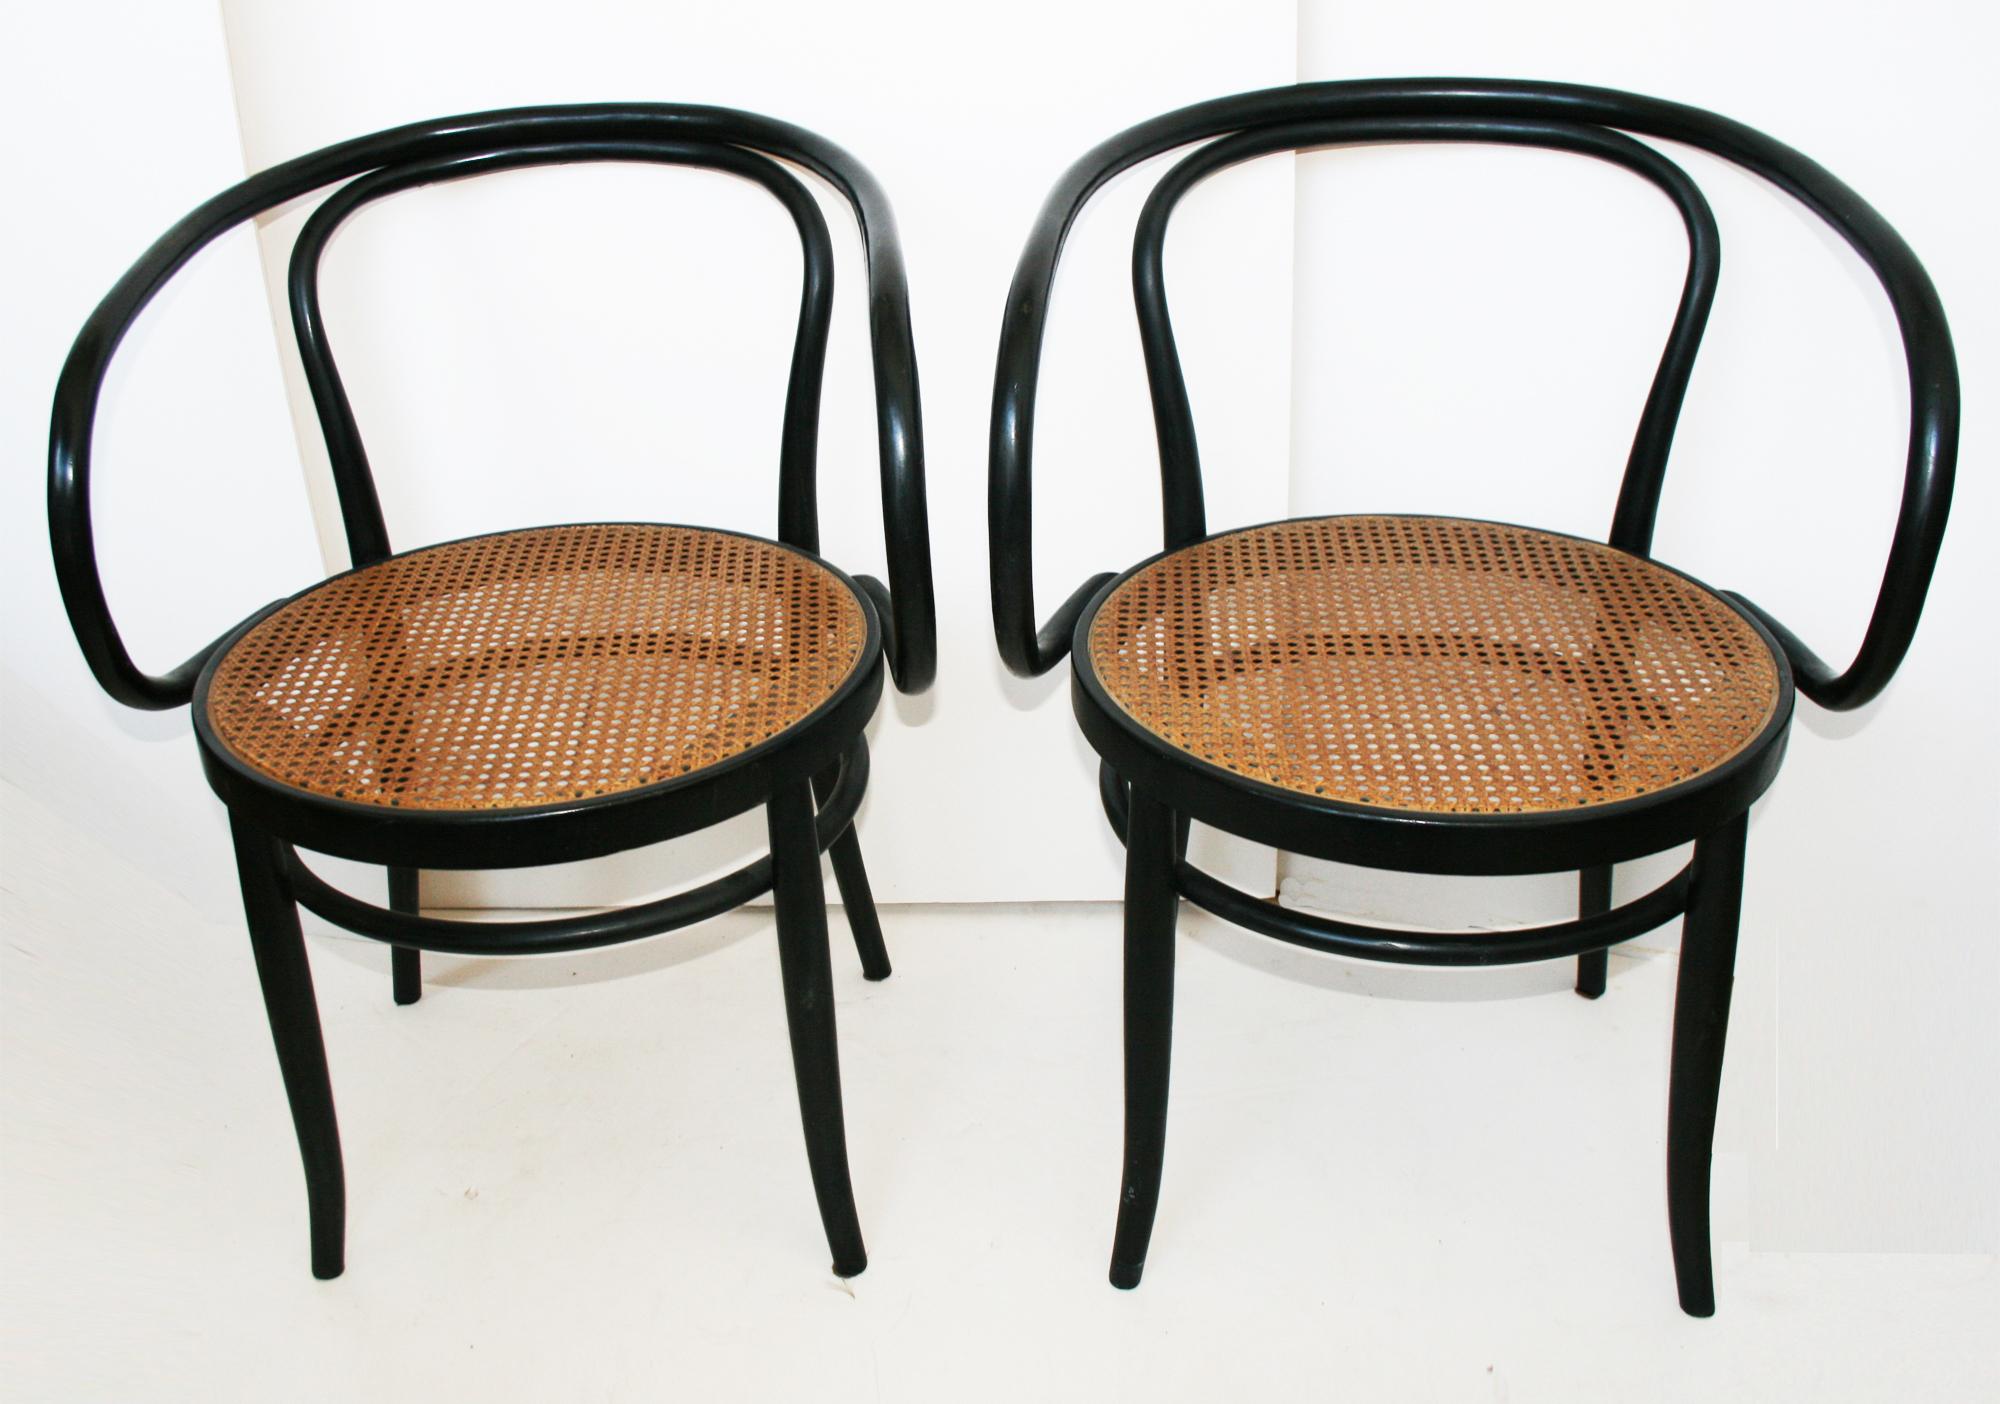 Der Stuhl nach Thonet stammt aus den Jahren zwischen 1955-1965. 

Er ist der Lieblingsstuhl von Le Corbusier und einer der beliebtesten Entwürfe von Architekten und Designern. 

Leider hat es kein Etikett:: aber es ist in perfektem Zustand:: mit